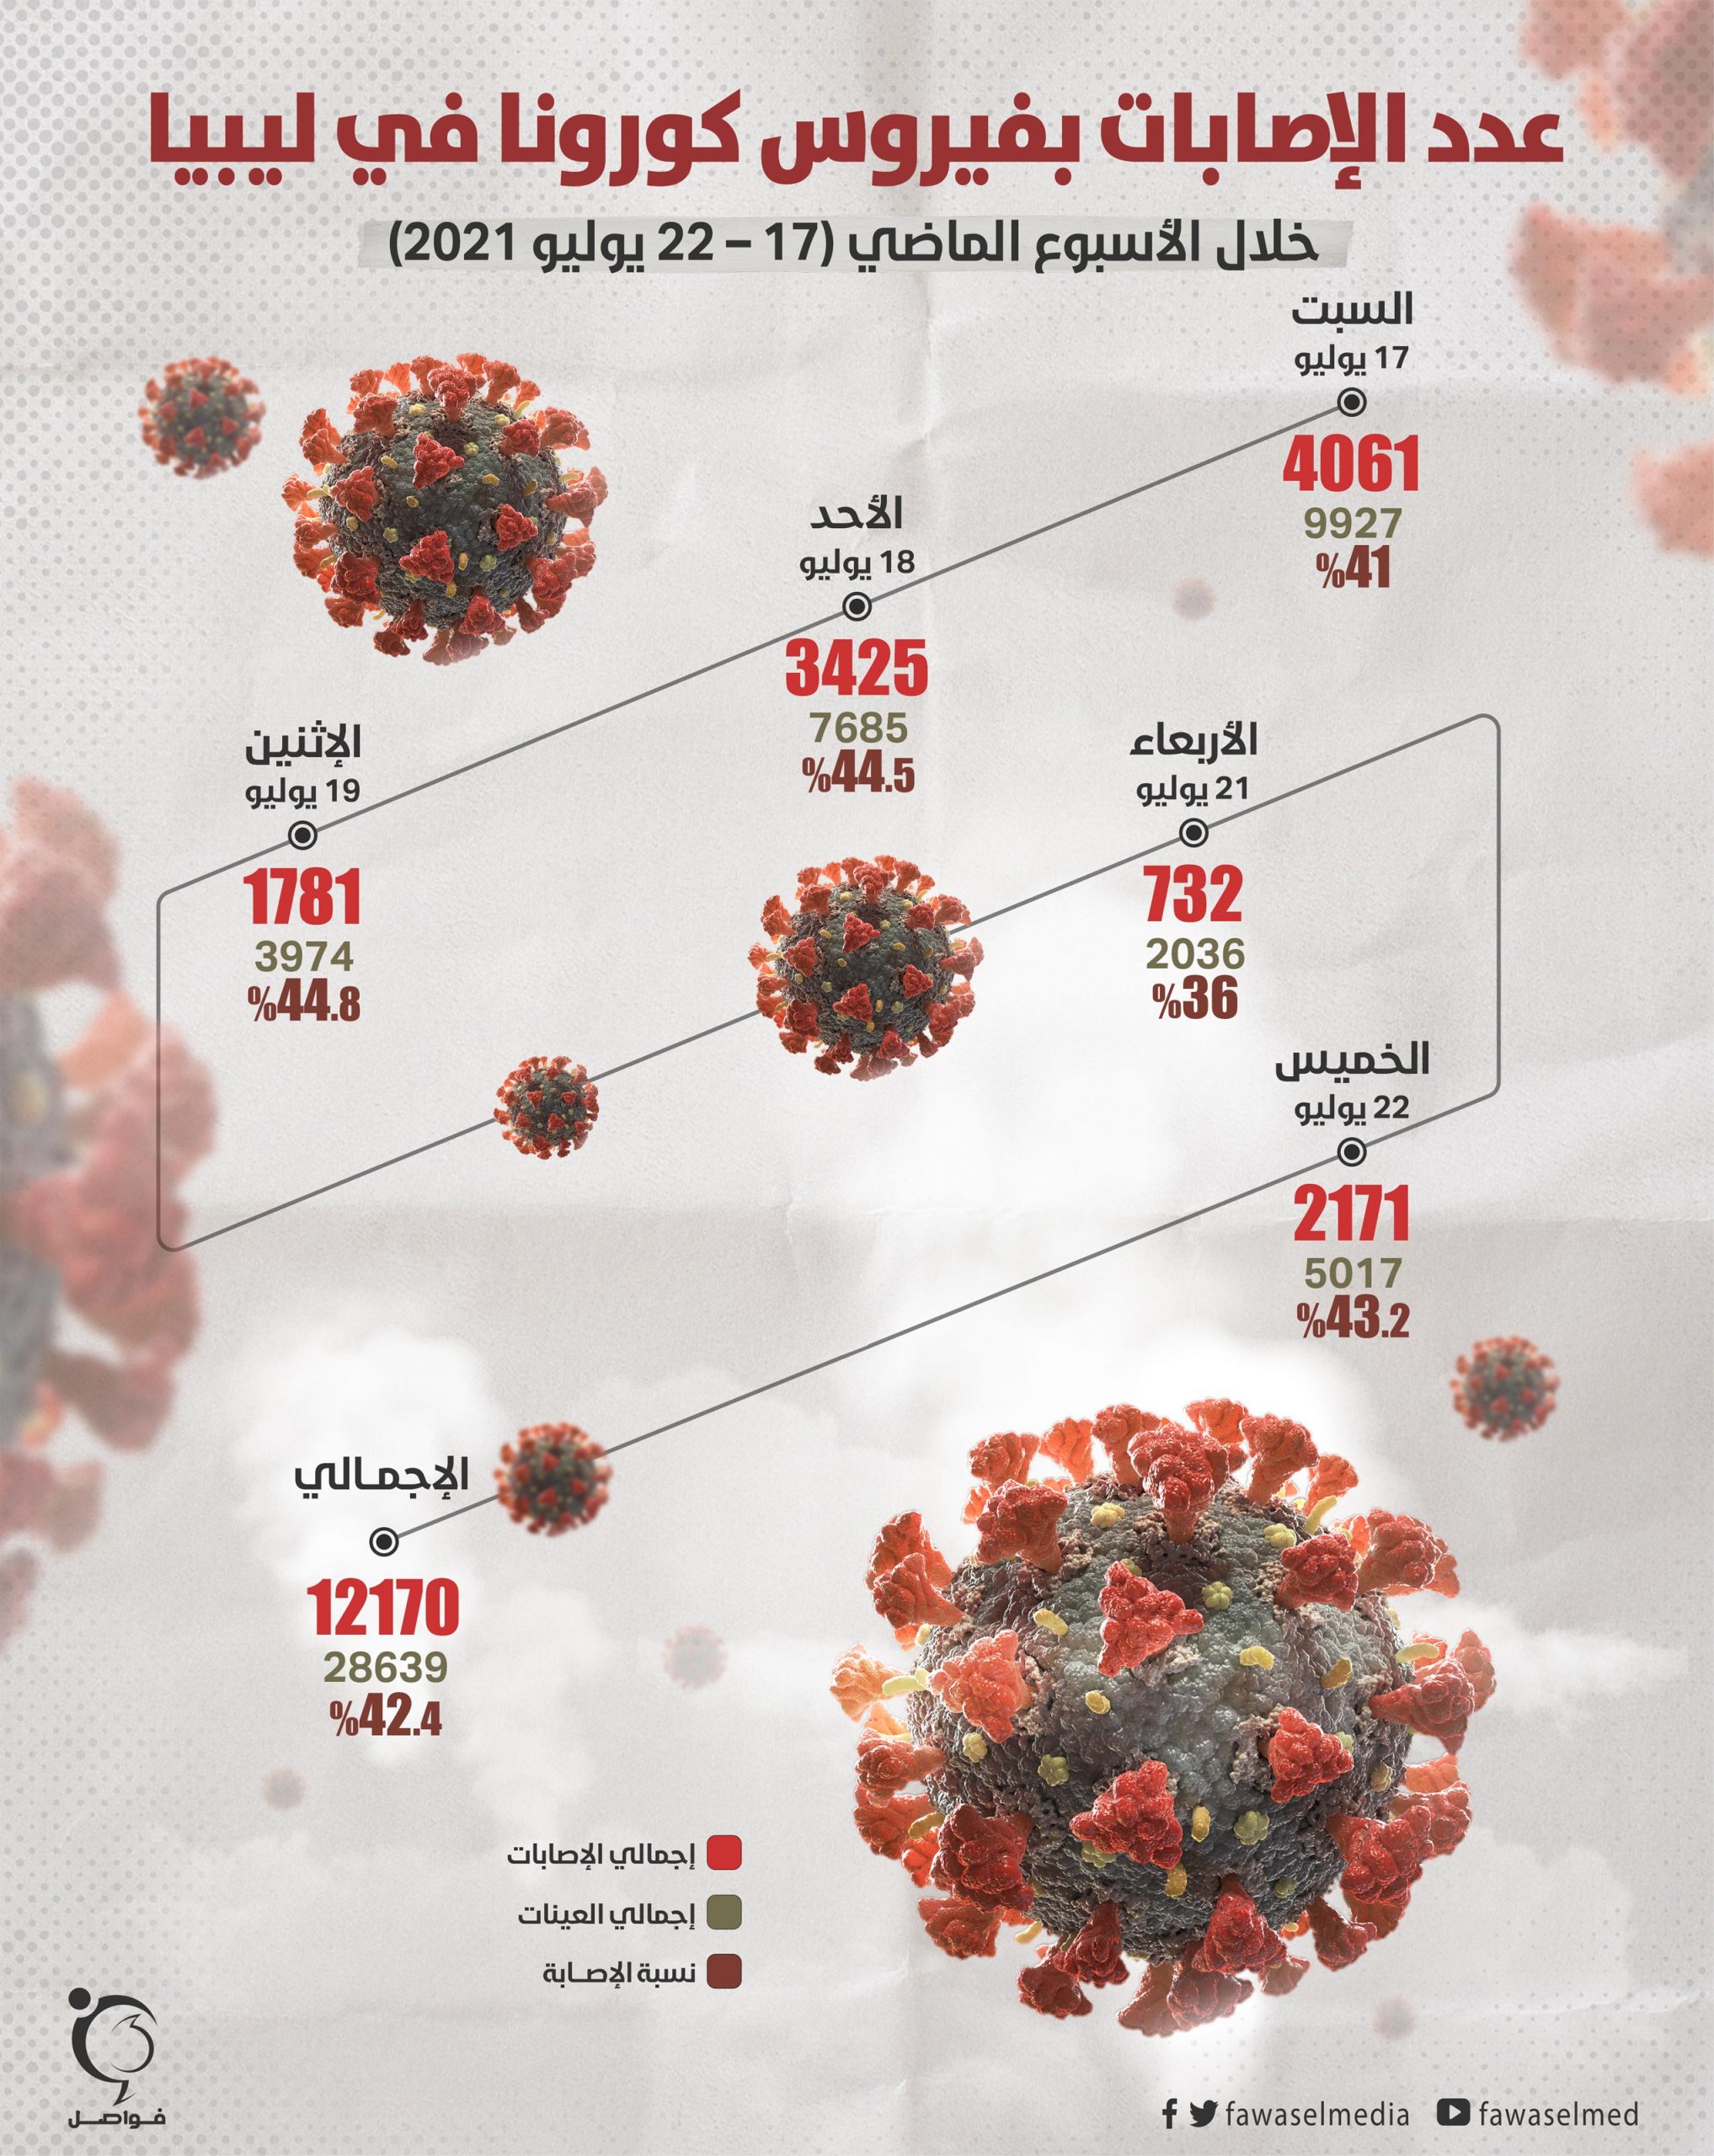 ما زالت ليبيا تعيش وضعًا وبائيًّا مُقلقًا بسبب ارتفاع عدد الإصابات والوفيات جراء فيروس كورونا، بعد أن سجلت 12170 حالة موجَبة من 28639 عينة، إضافة إلى 91 وفاة، خلال الأسبوع الماضي